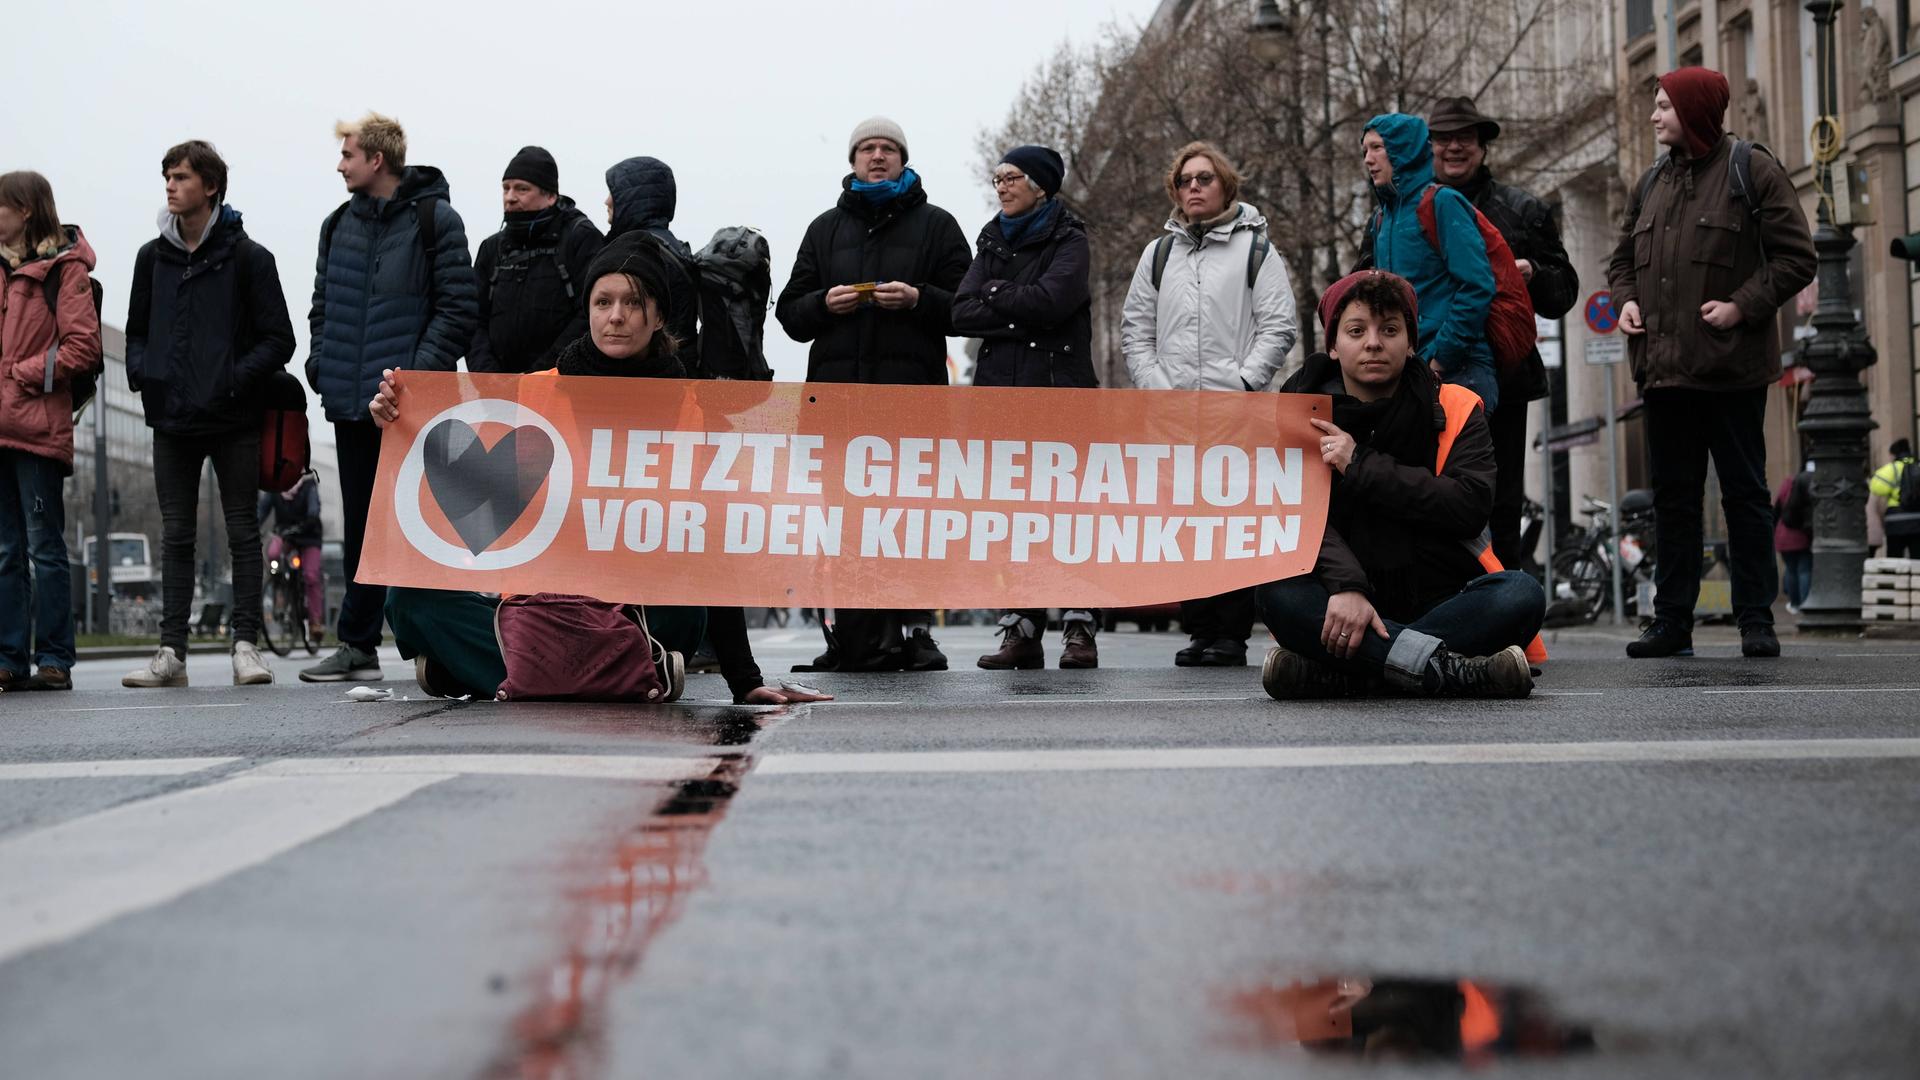 Mehrere Menschen blockieren eine Straße in Berlin mit einem Transparent, auf dem steht: "Letzte Generation vor den Kipppunkten".